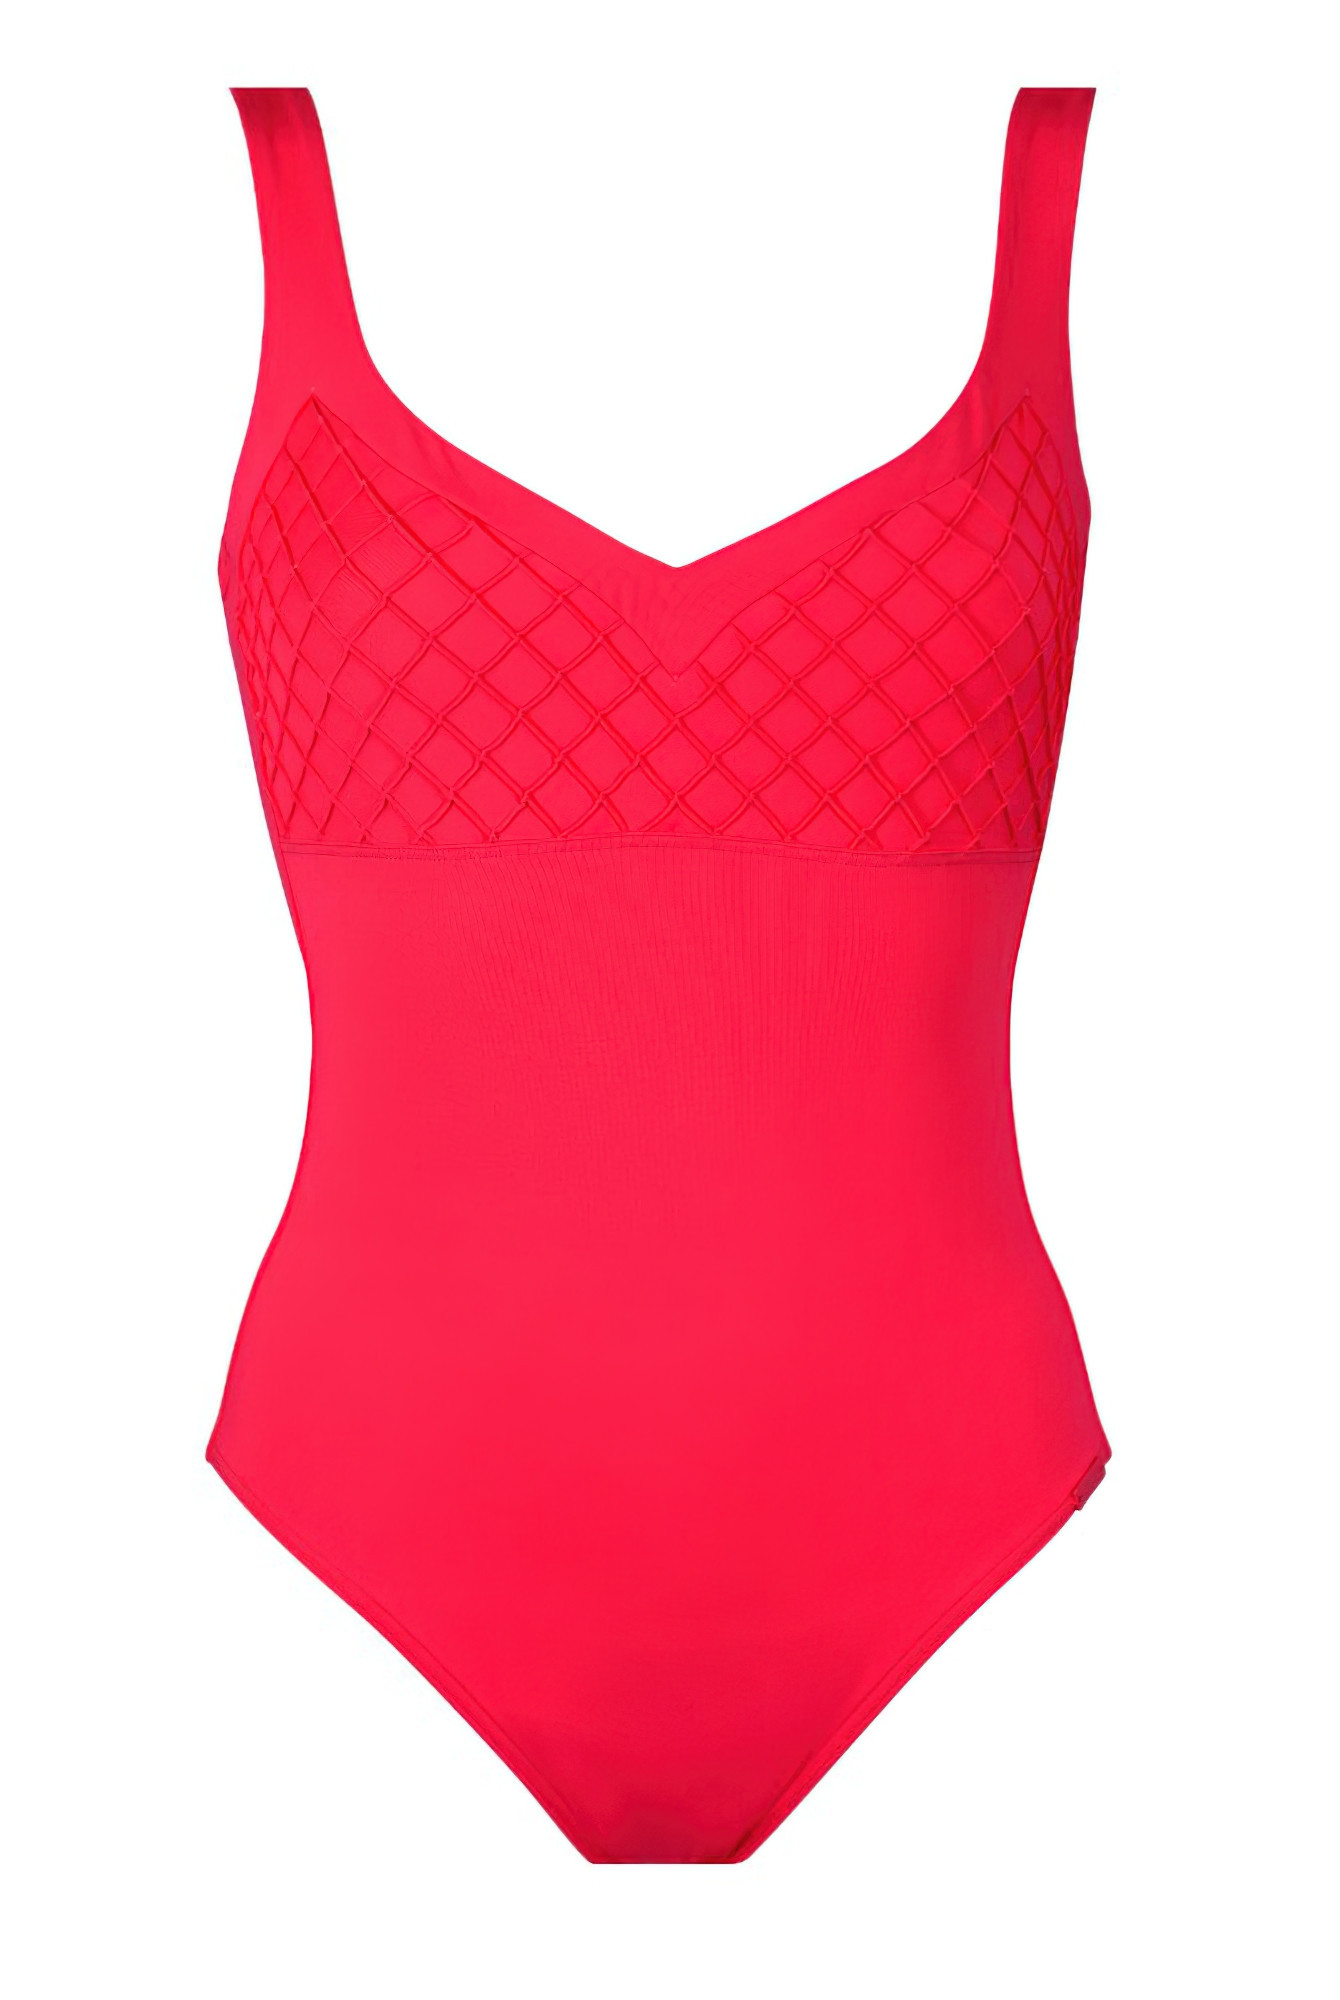 E-shop Maryan Melhorn Dámske jednodielne plavky, Farba: ružová, Veľkosť: 40 40 růžova